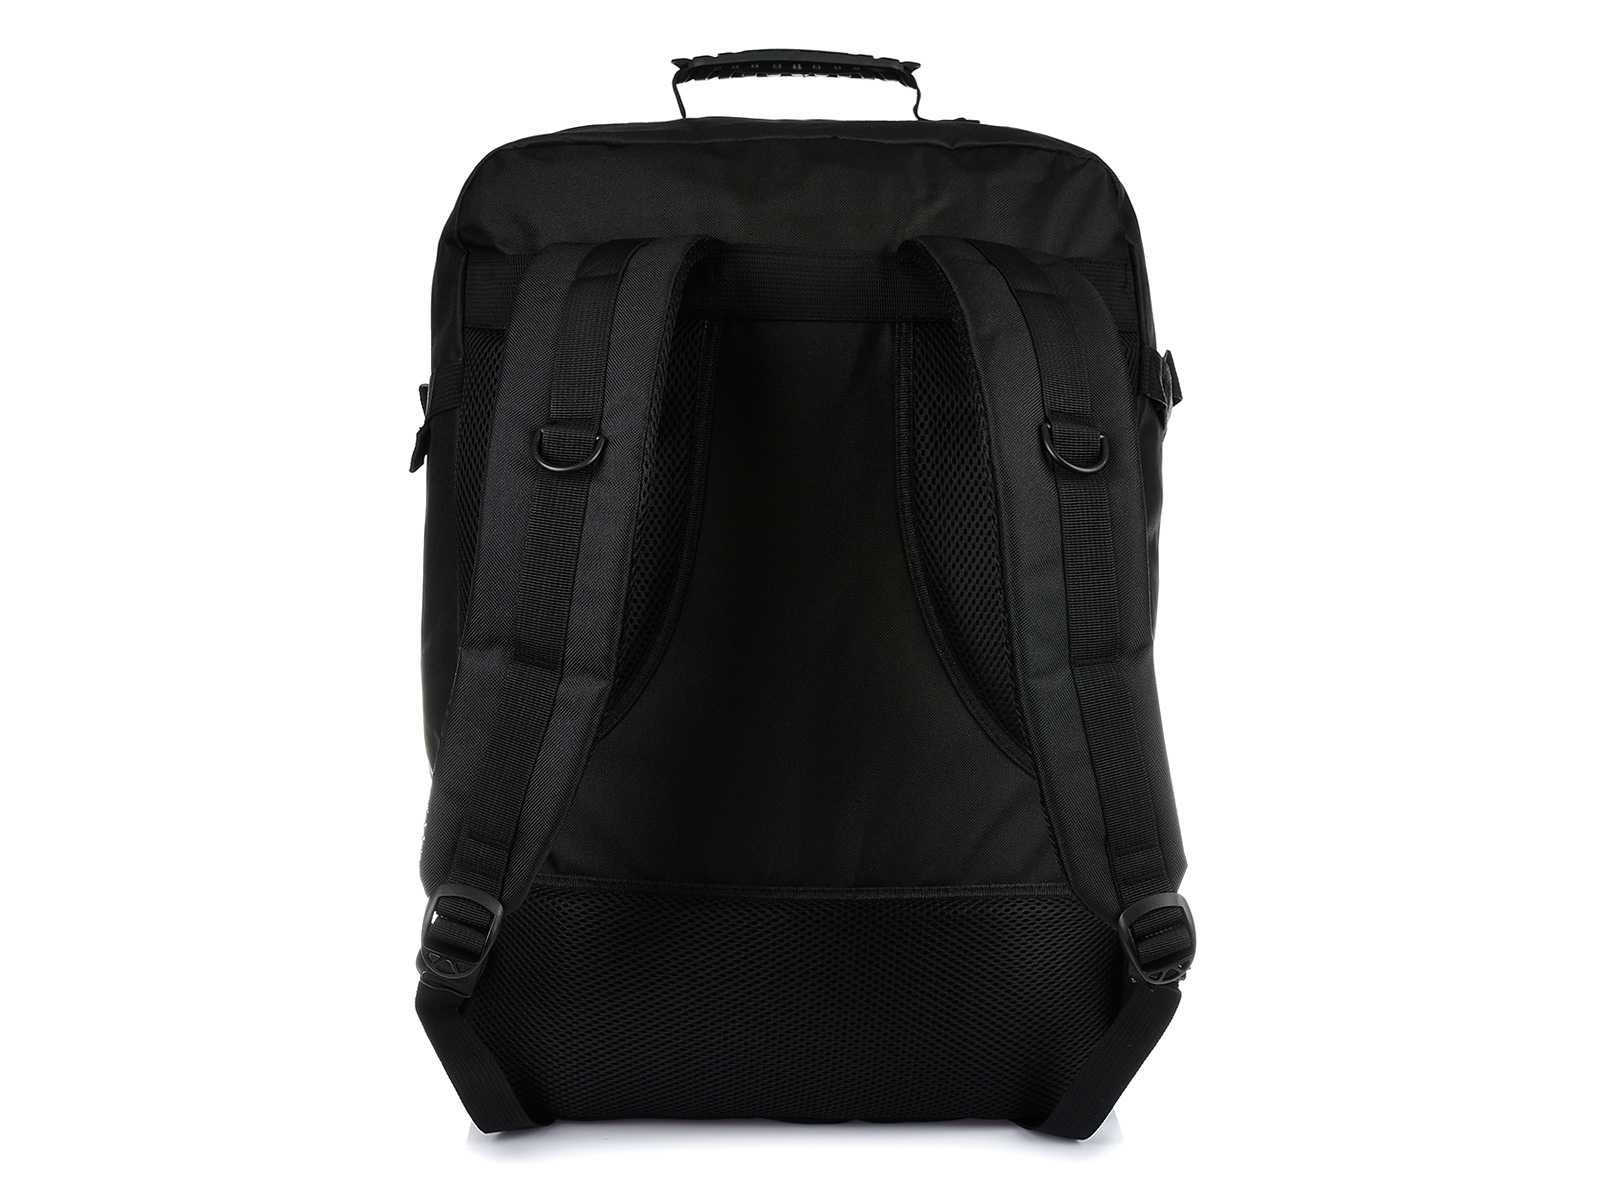 Czarny plecak podróżny, plecak sportowy, bagaż podręczy do samolotu